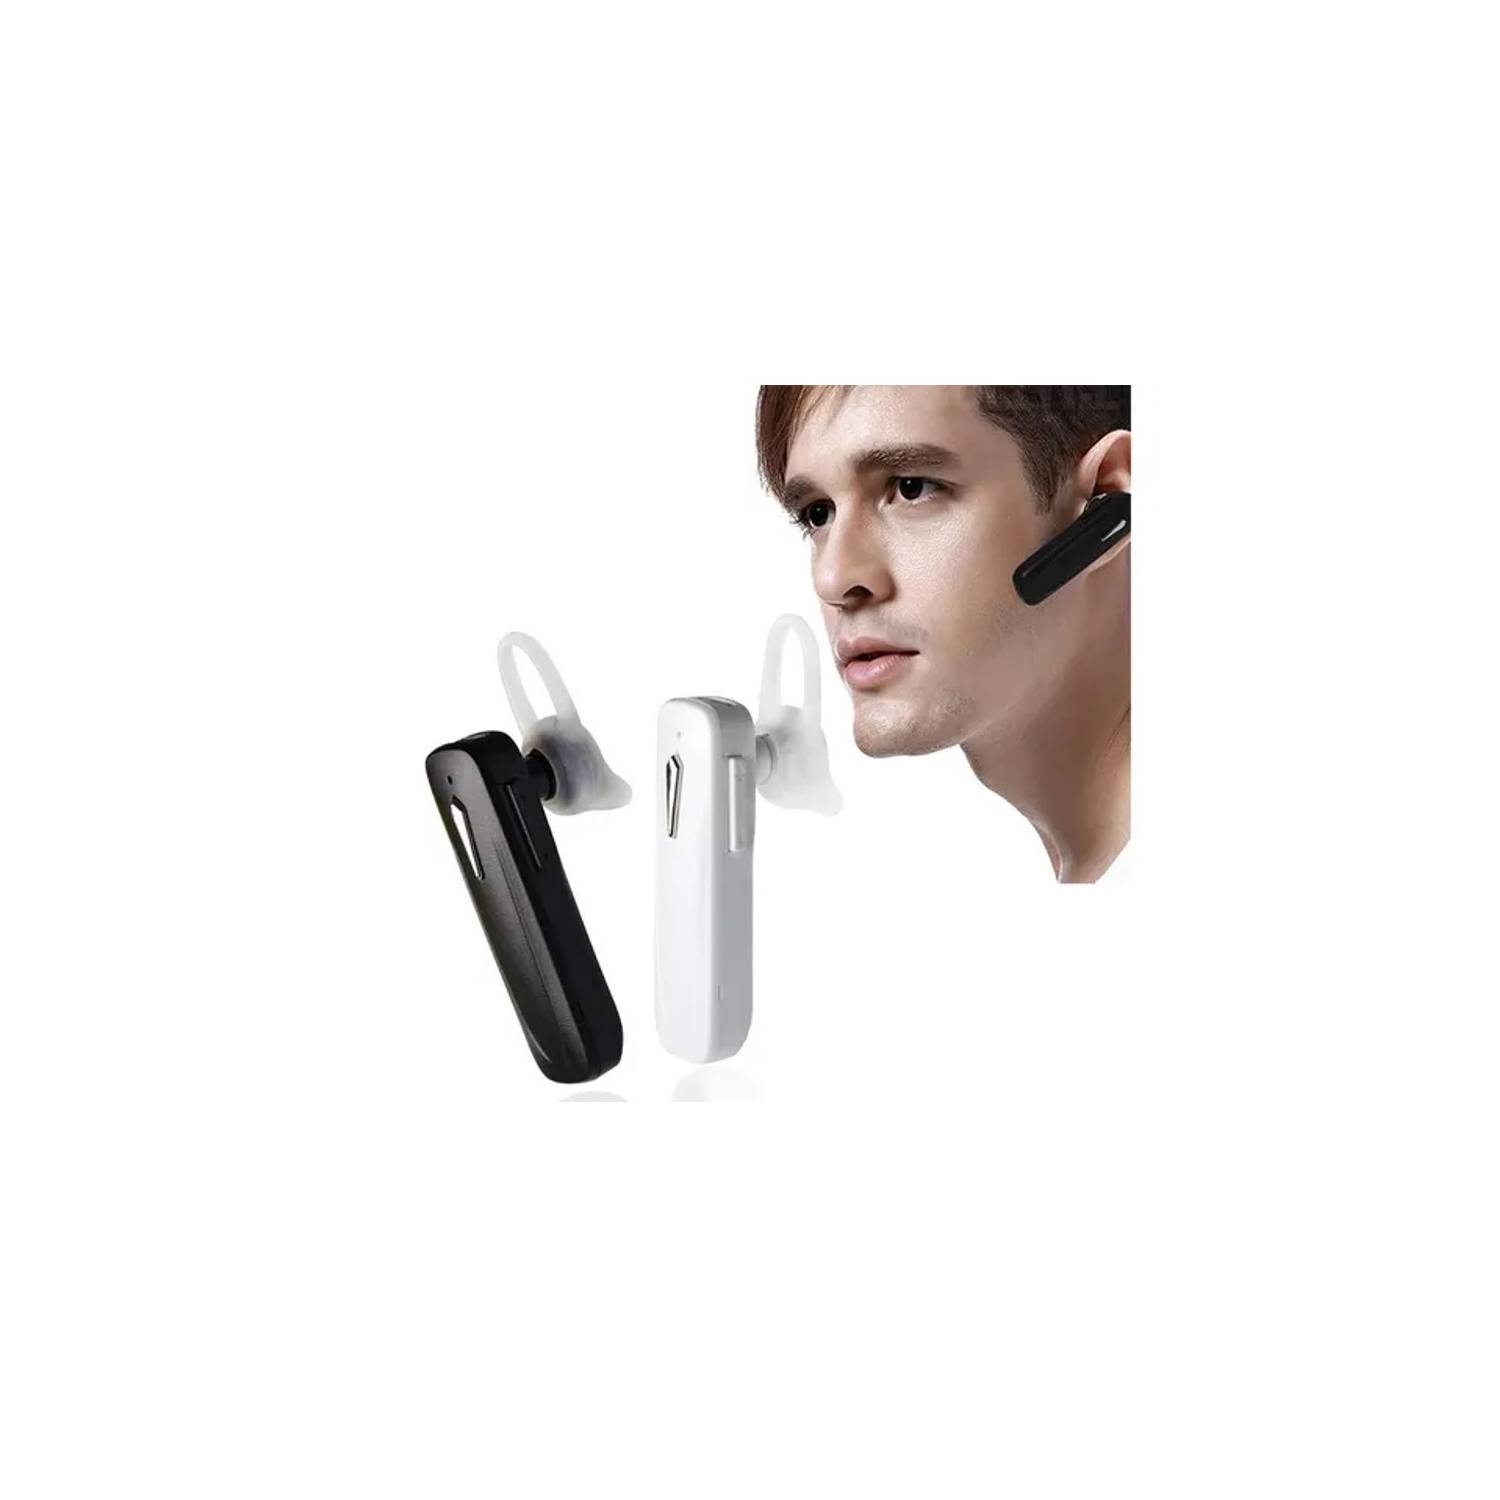 GENERICO Audífono In-ear Inalámbrico Manos Libres Bluetooth